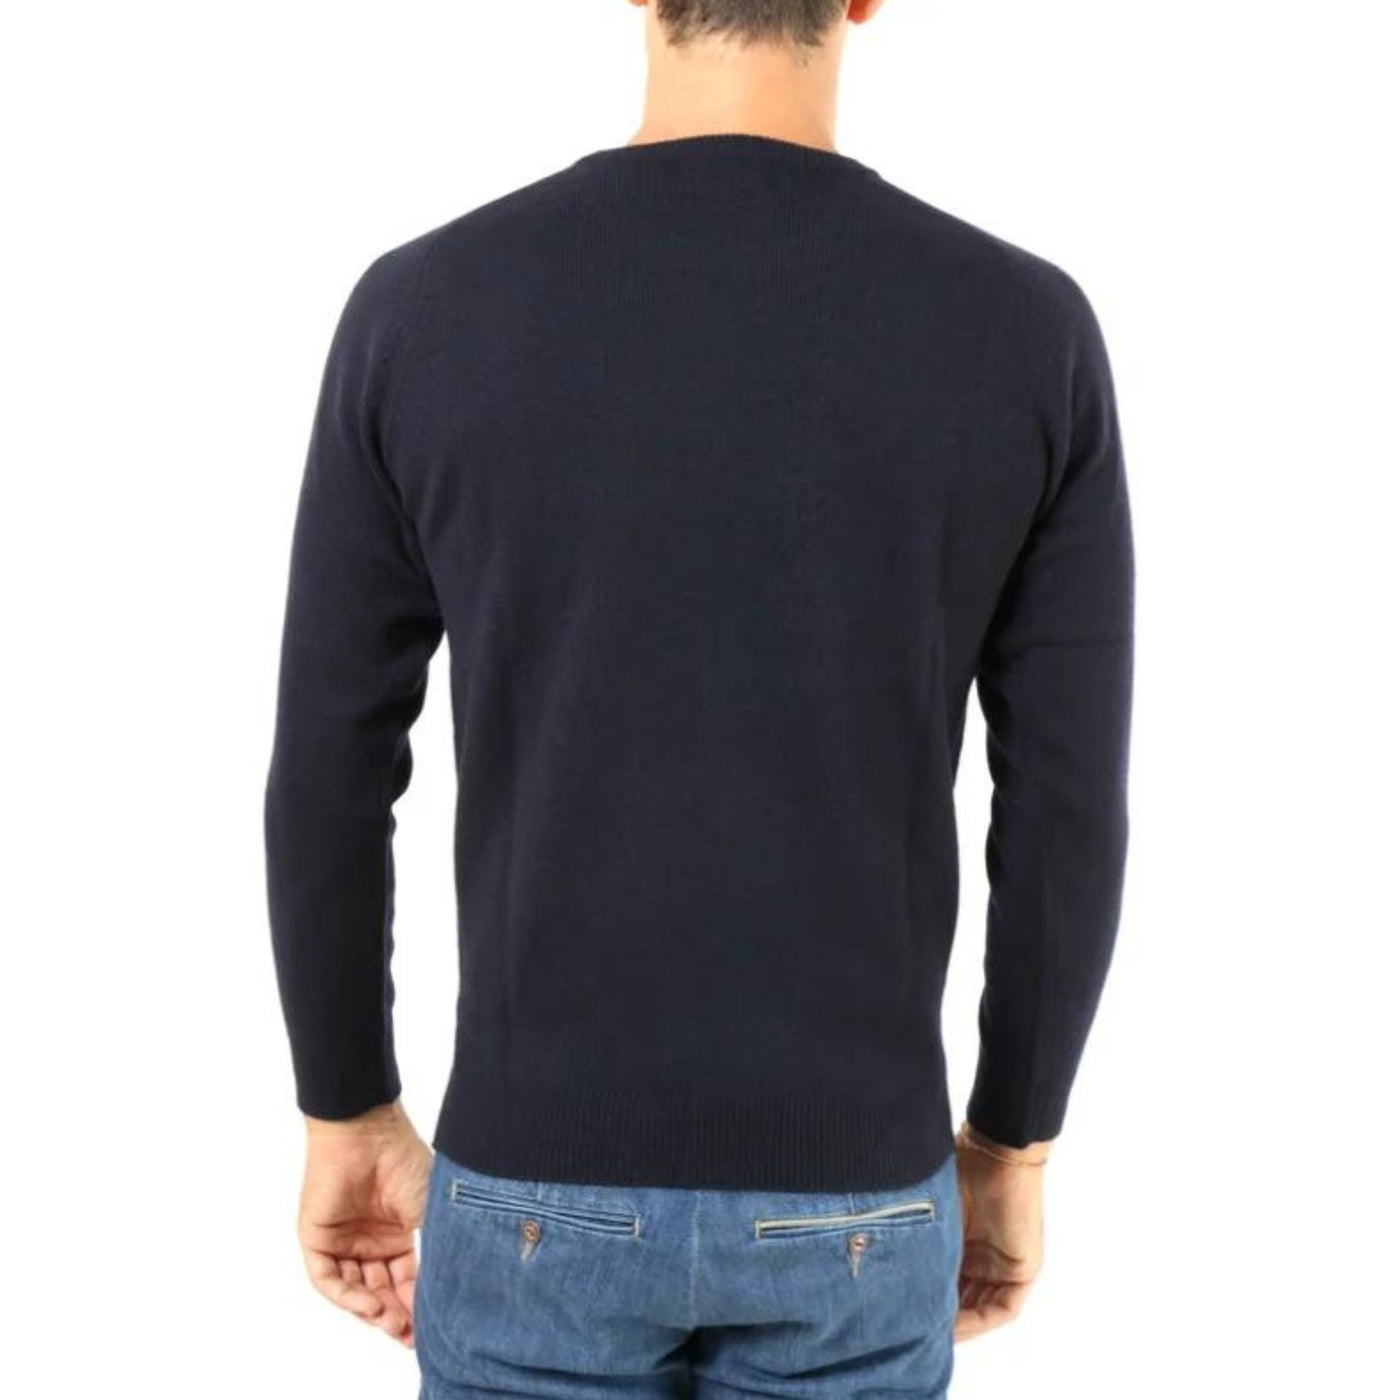 Men's sweater in pure blue wool